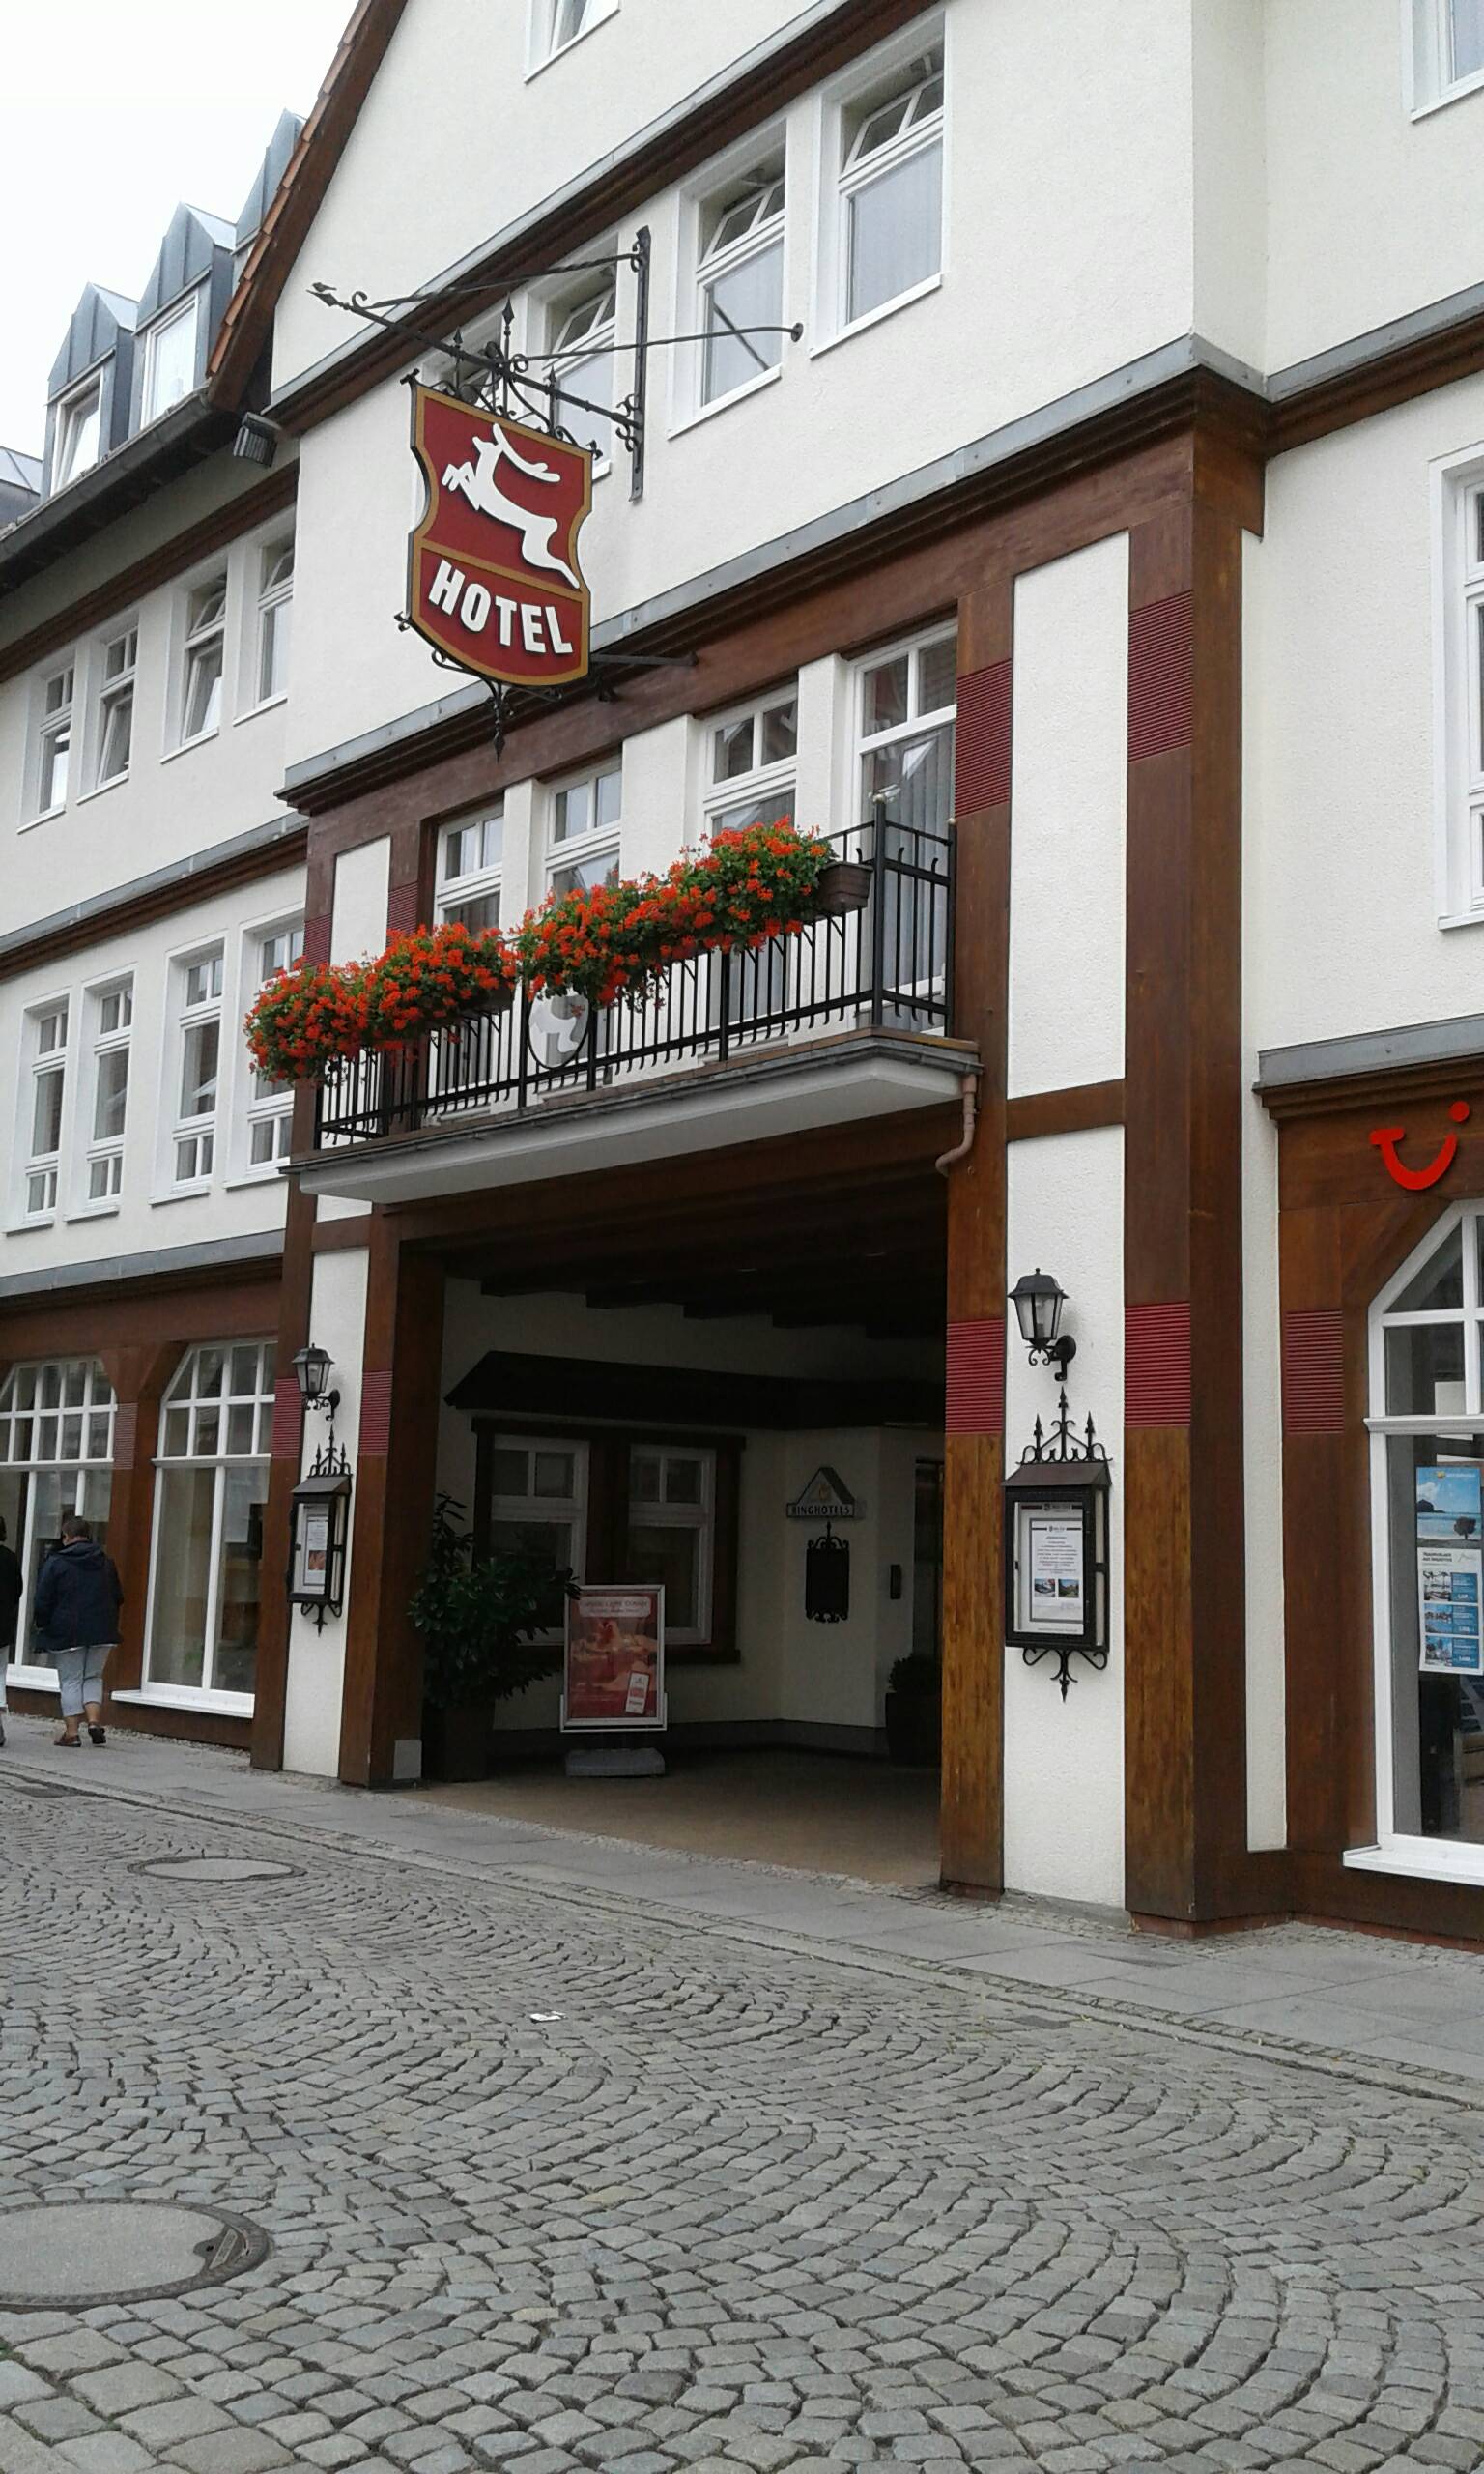 Bild 1 Hotel u. Restaurant Weißer Hirsch Wieland GmbH & Co. KG in Wernigerode